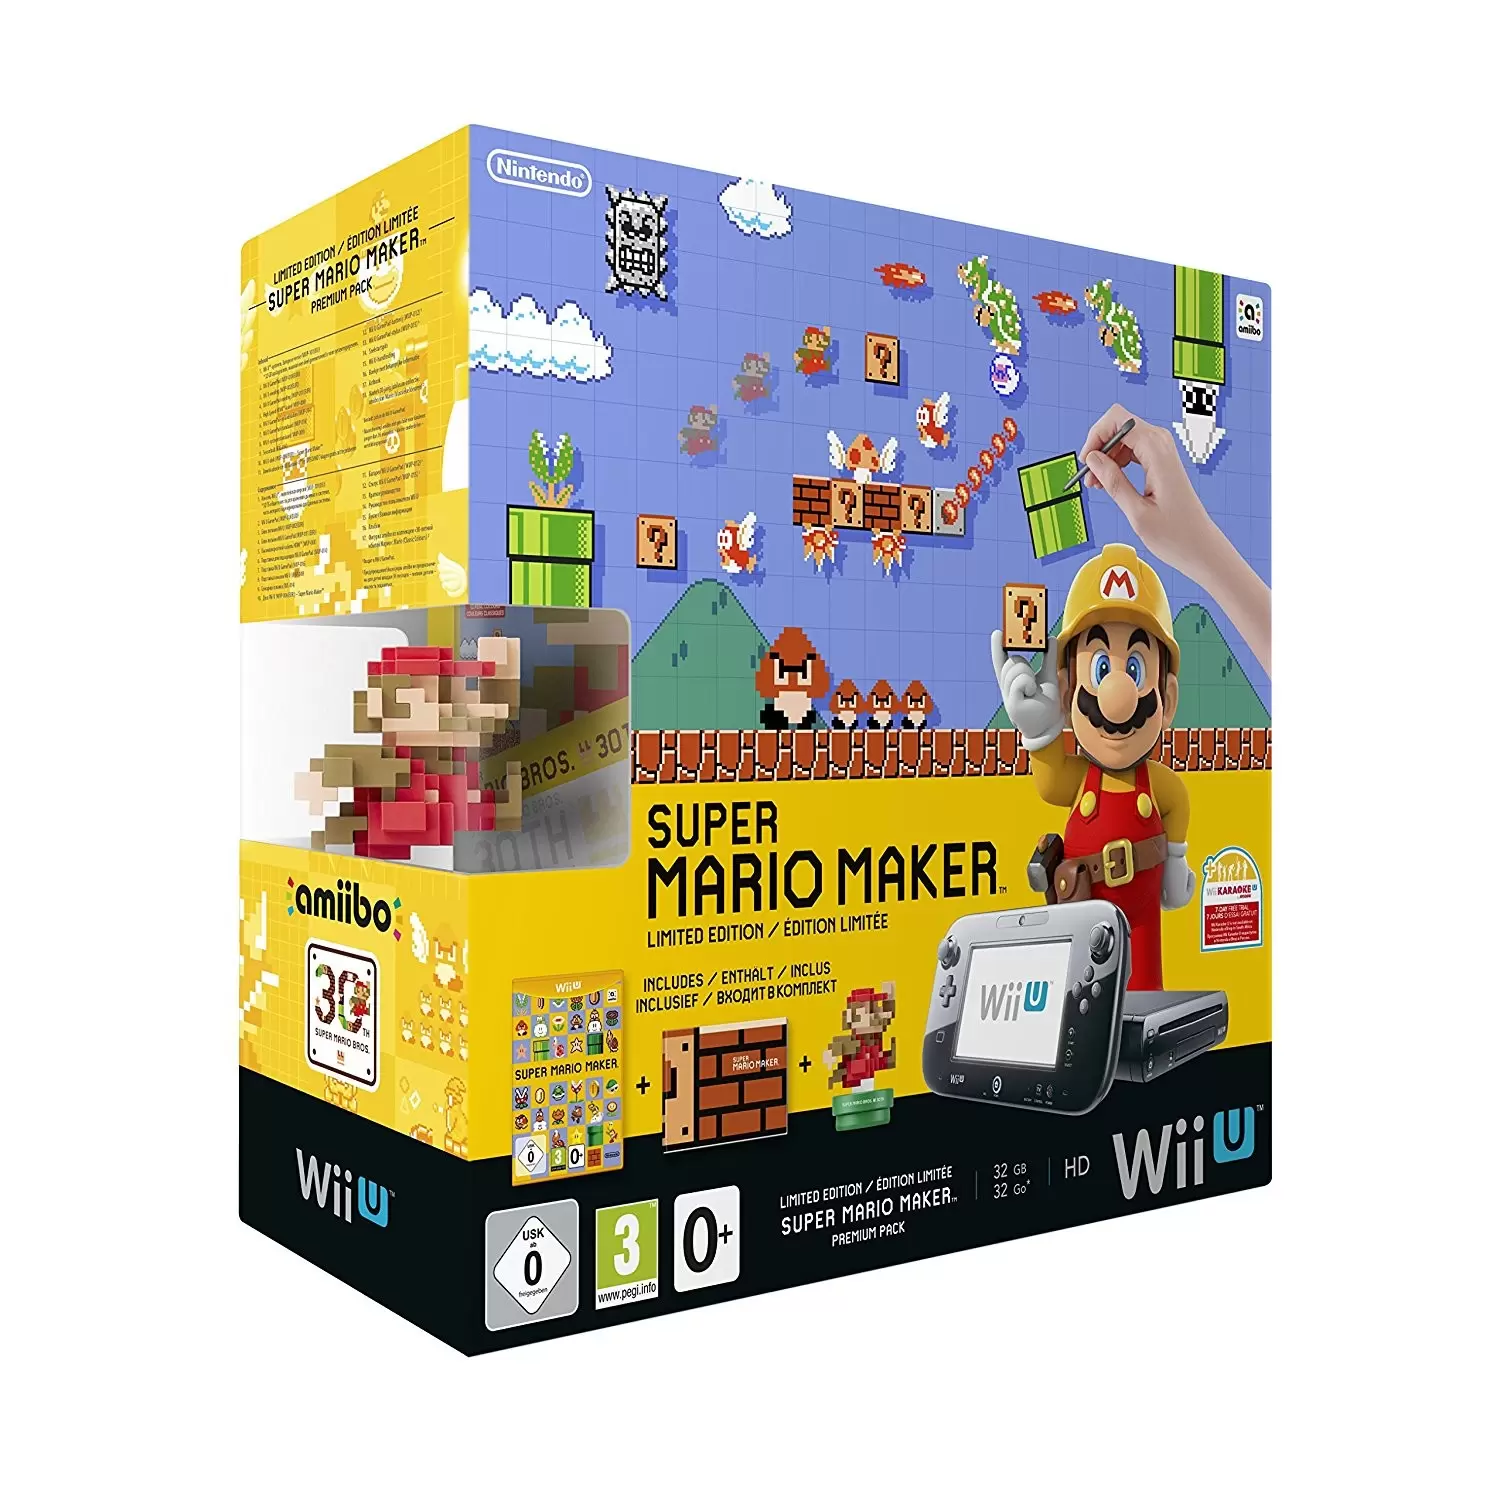 Matériel Wii U - Console Wii U + Super Mario Maker